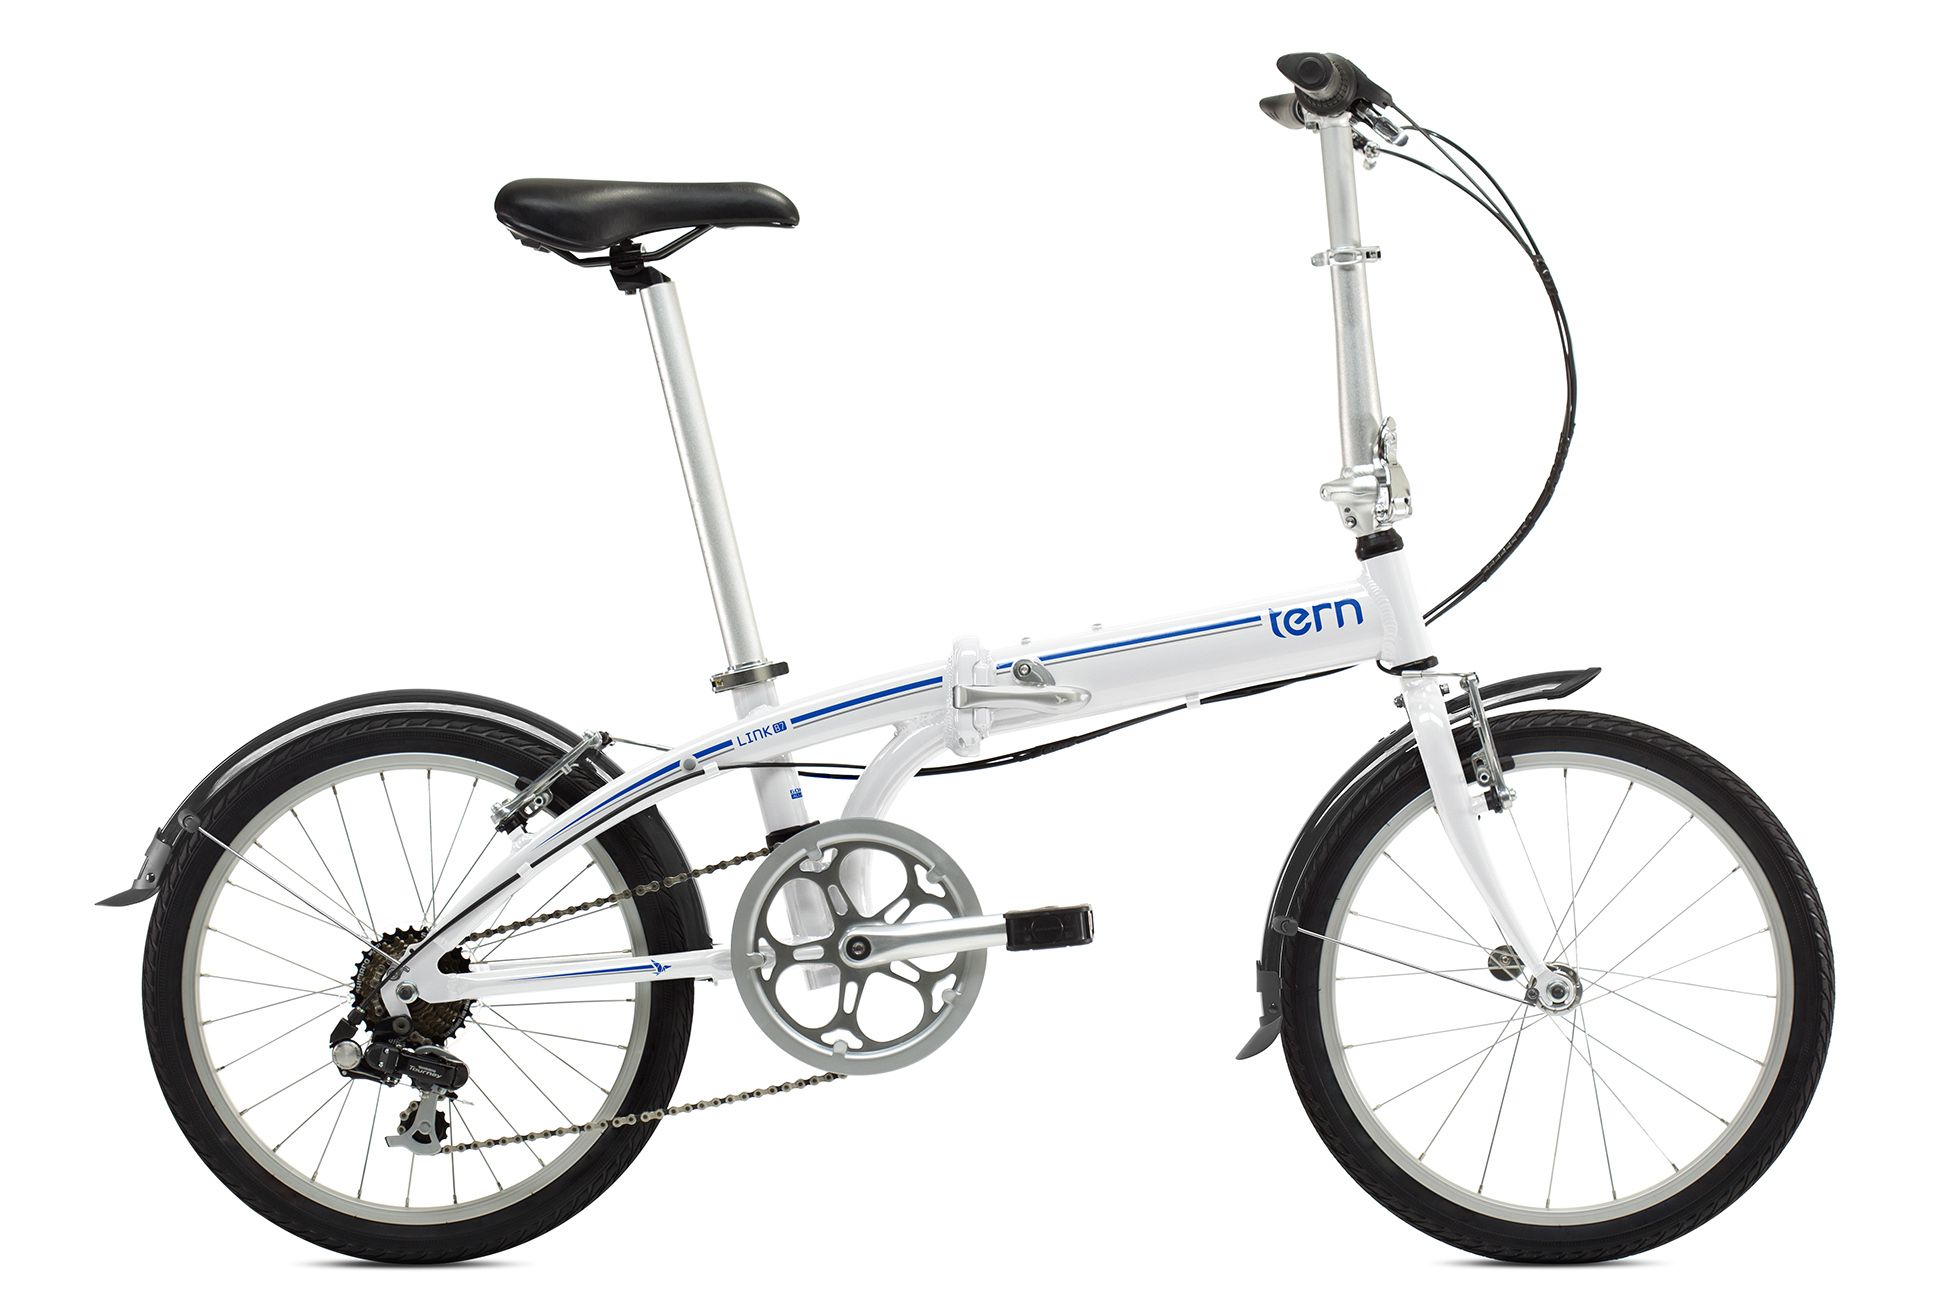  Отзывы о Складном велосипеде Tern Link B7 2016